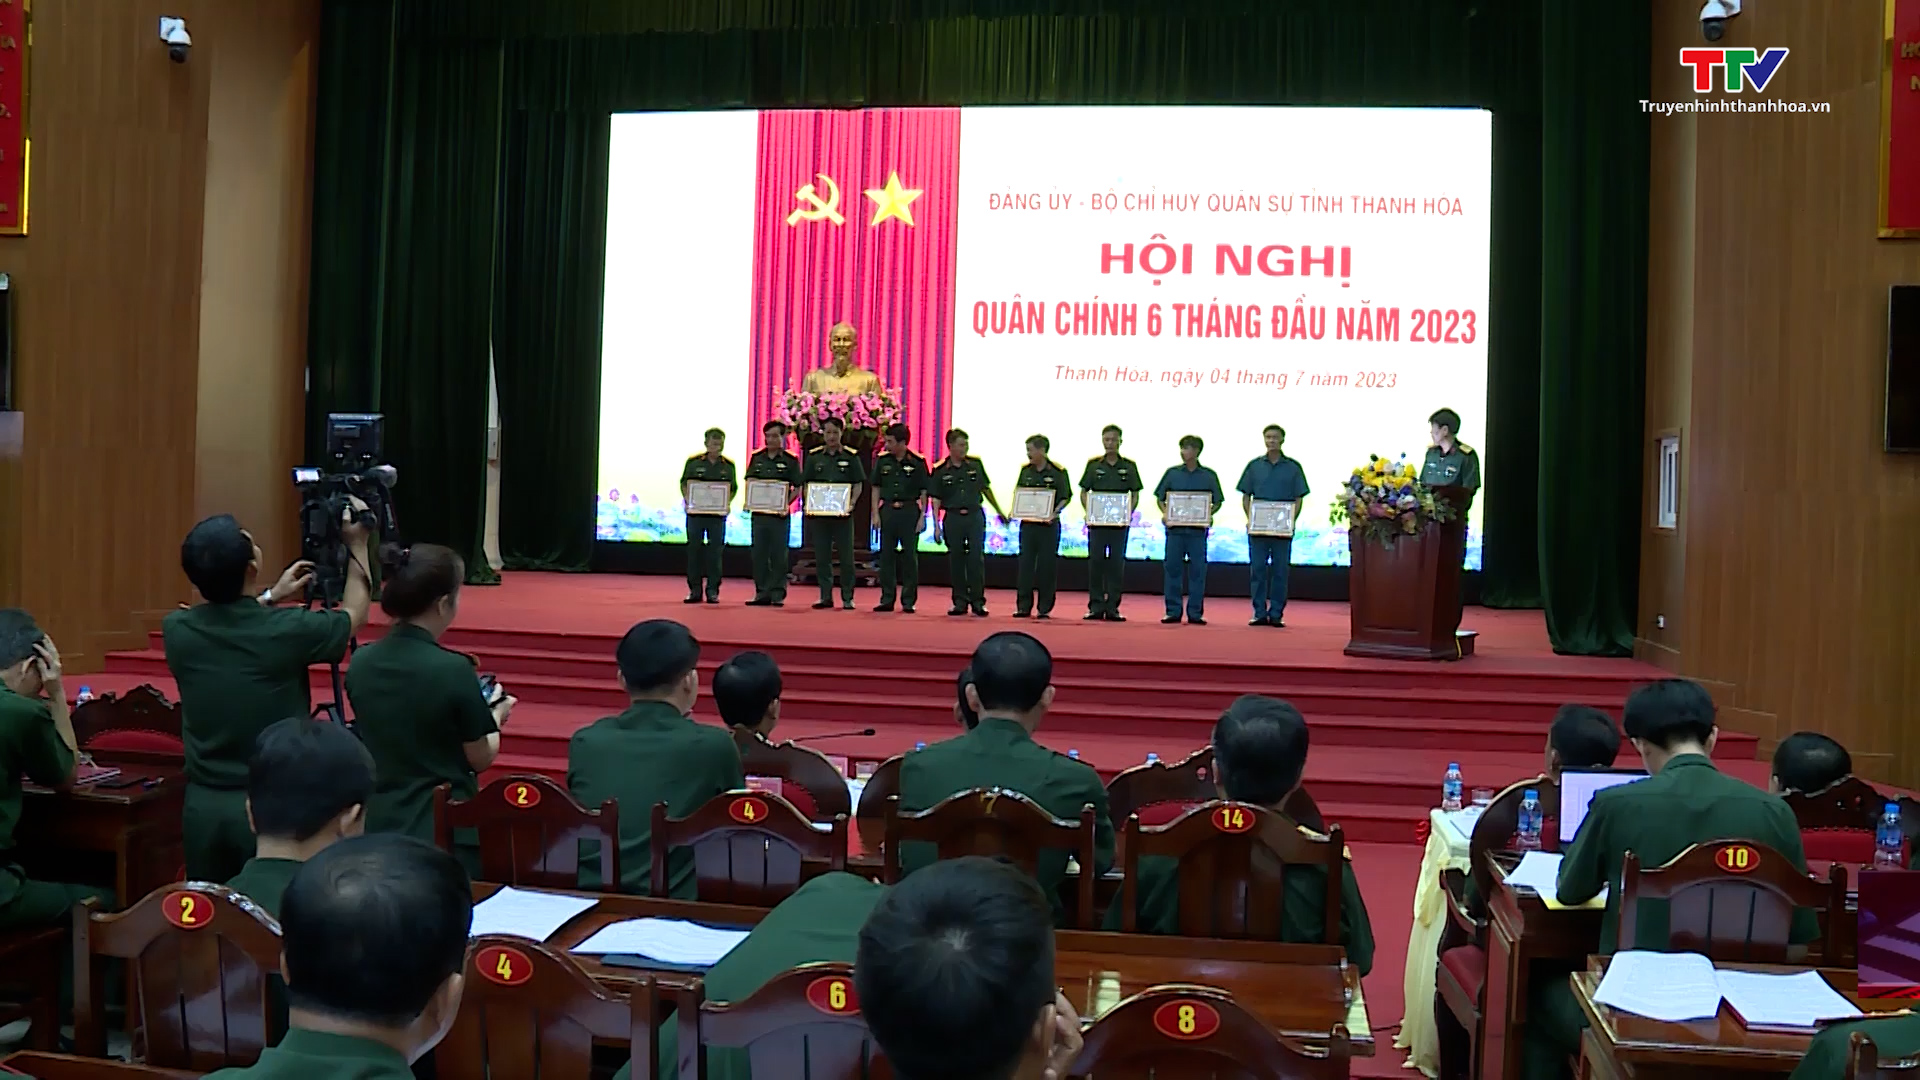 Bộ Chỉ huy quân sự Thanh Hóa tổ chức Hội nghị quân chính 6 tháng đầu năm 2023 - Ảnh 3.